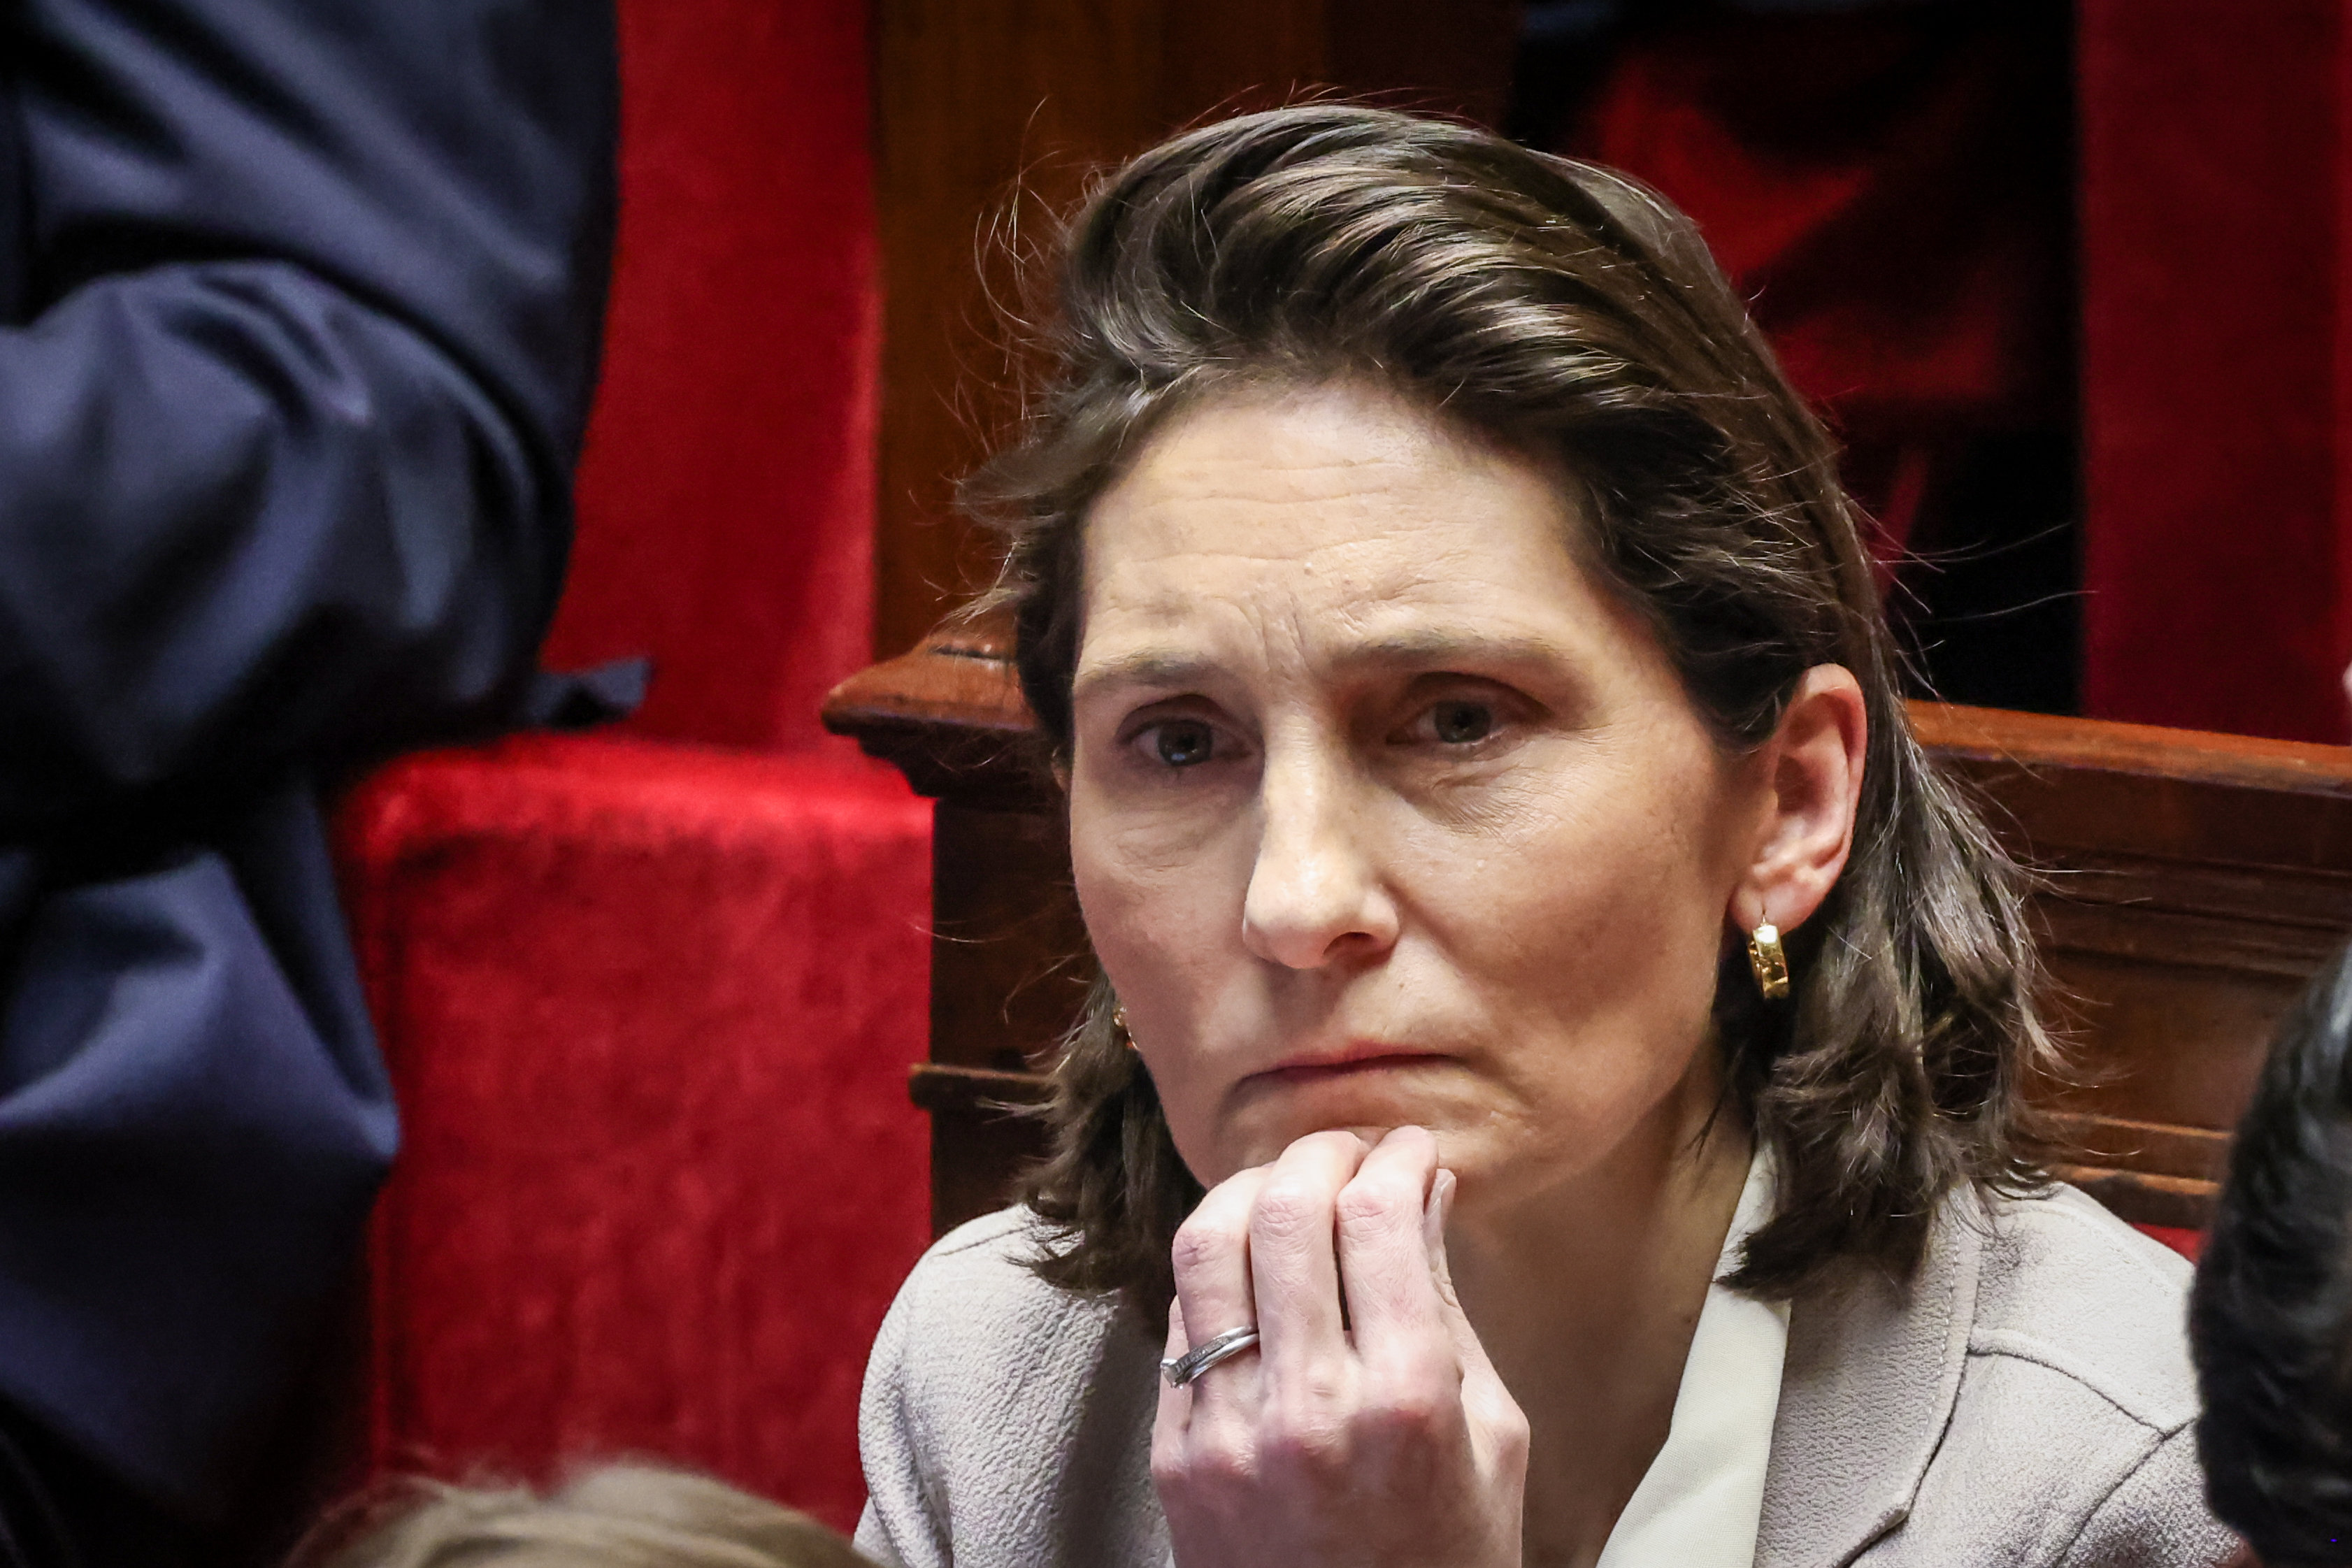 Ce mardi, lors des Questions au gouvernement, à l’Assemblée nationale, Amélie Oudéa-Castéra s’est retrouvée mise sur le gril. Elle s’est défendue en mettant en avant sa « sincérité ». LP/Frédéric Dugit